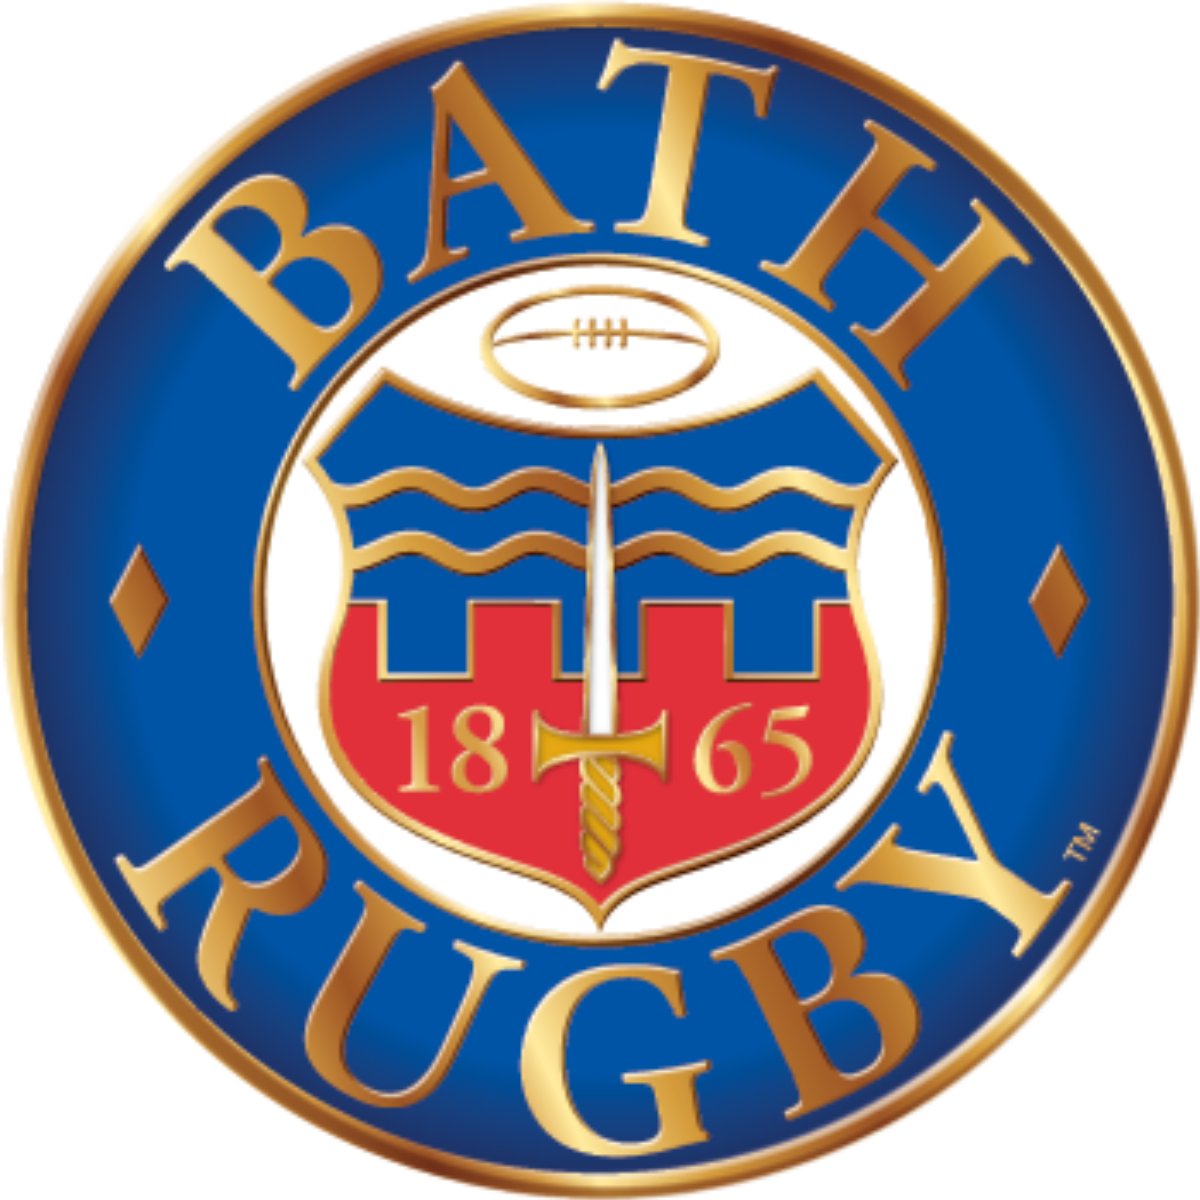 Bath rugby